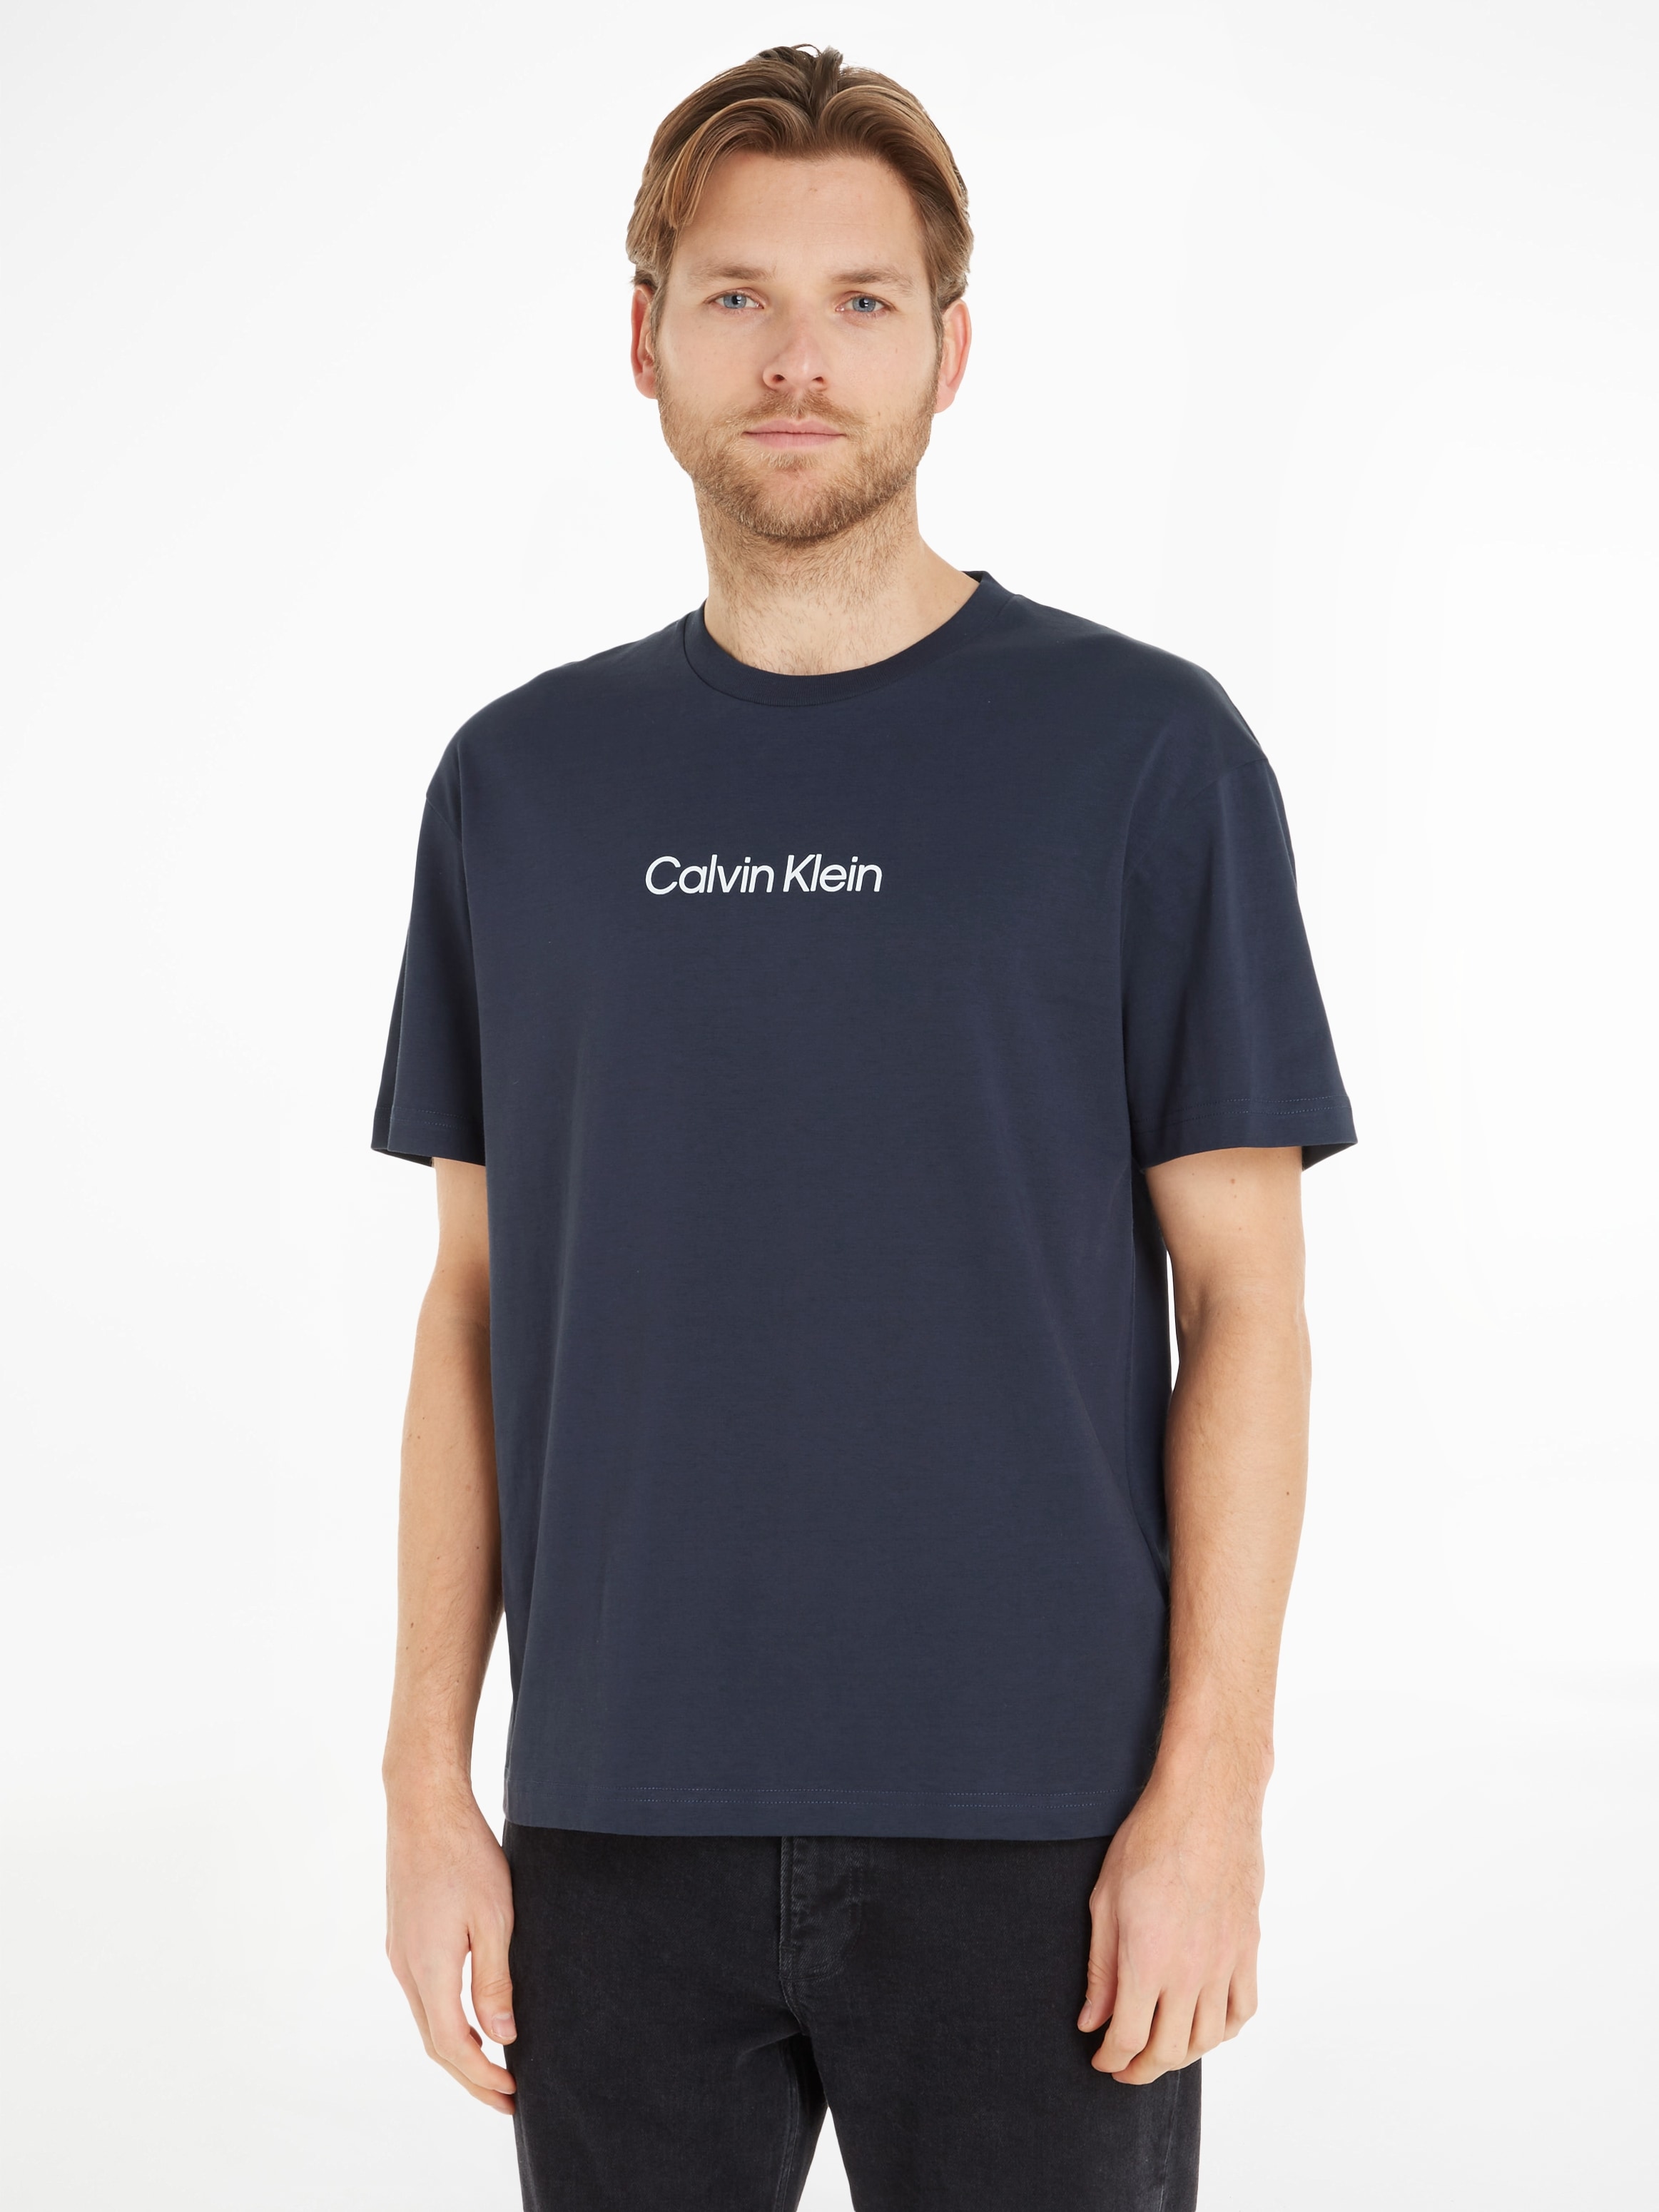 Calvin Klein T-Shirt Markenlabel LOGO T-SHIRT«, bei COMFORT »HERO online aufgedrucktem mit